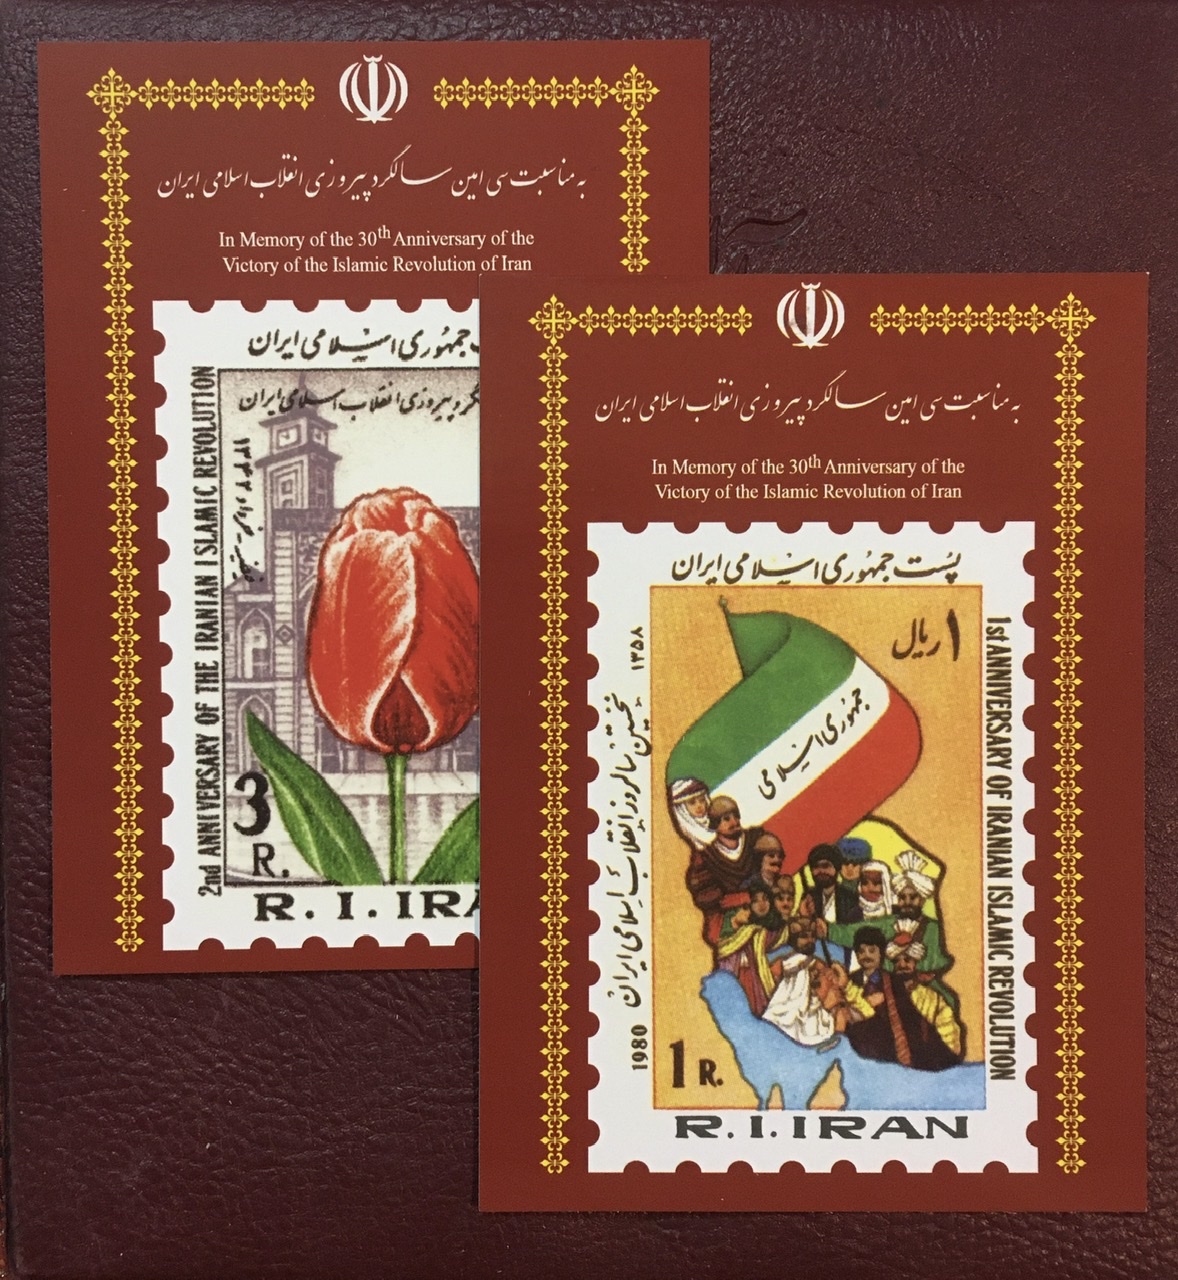 ٣٠ قطعه کارت پستال به مناسبت سی امین سالگرد پیروزی انقلاب زیبا و متنوع